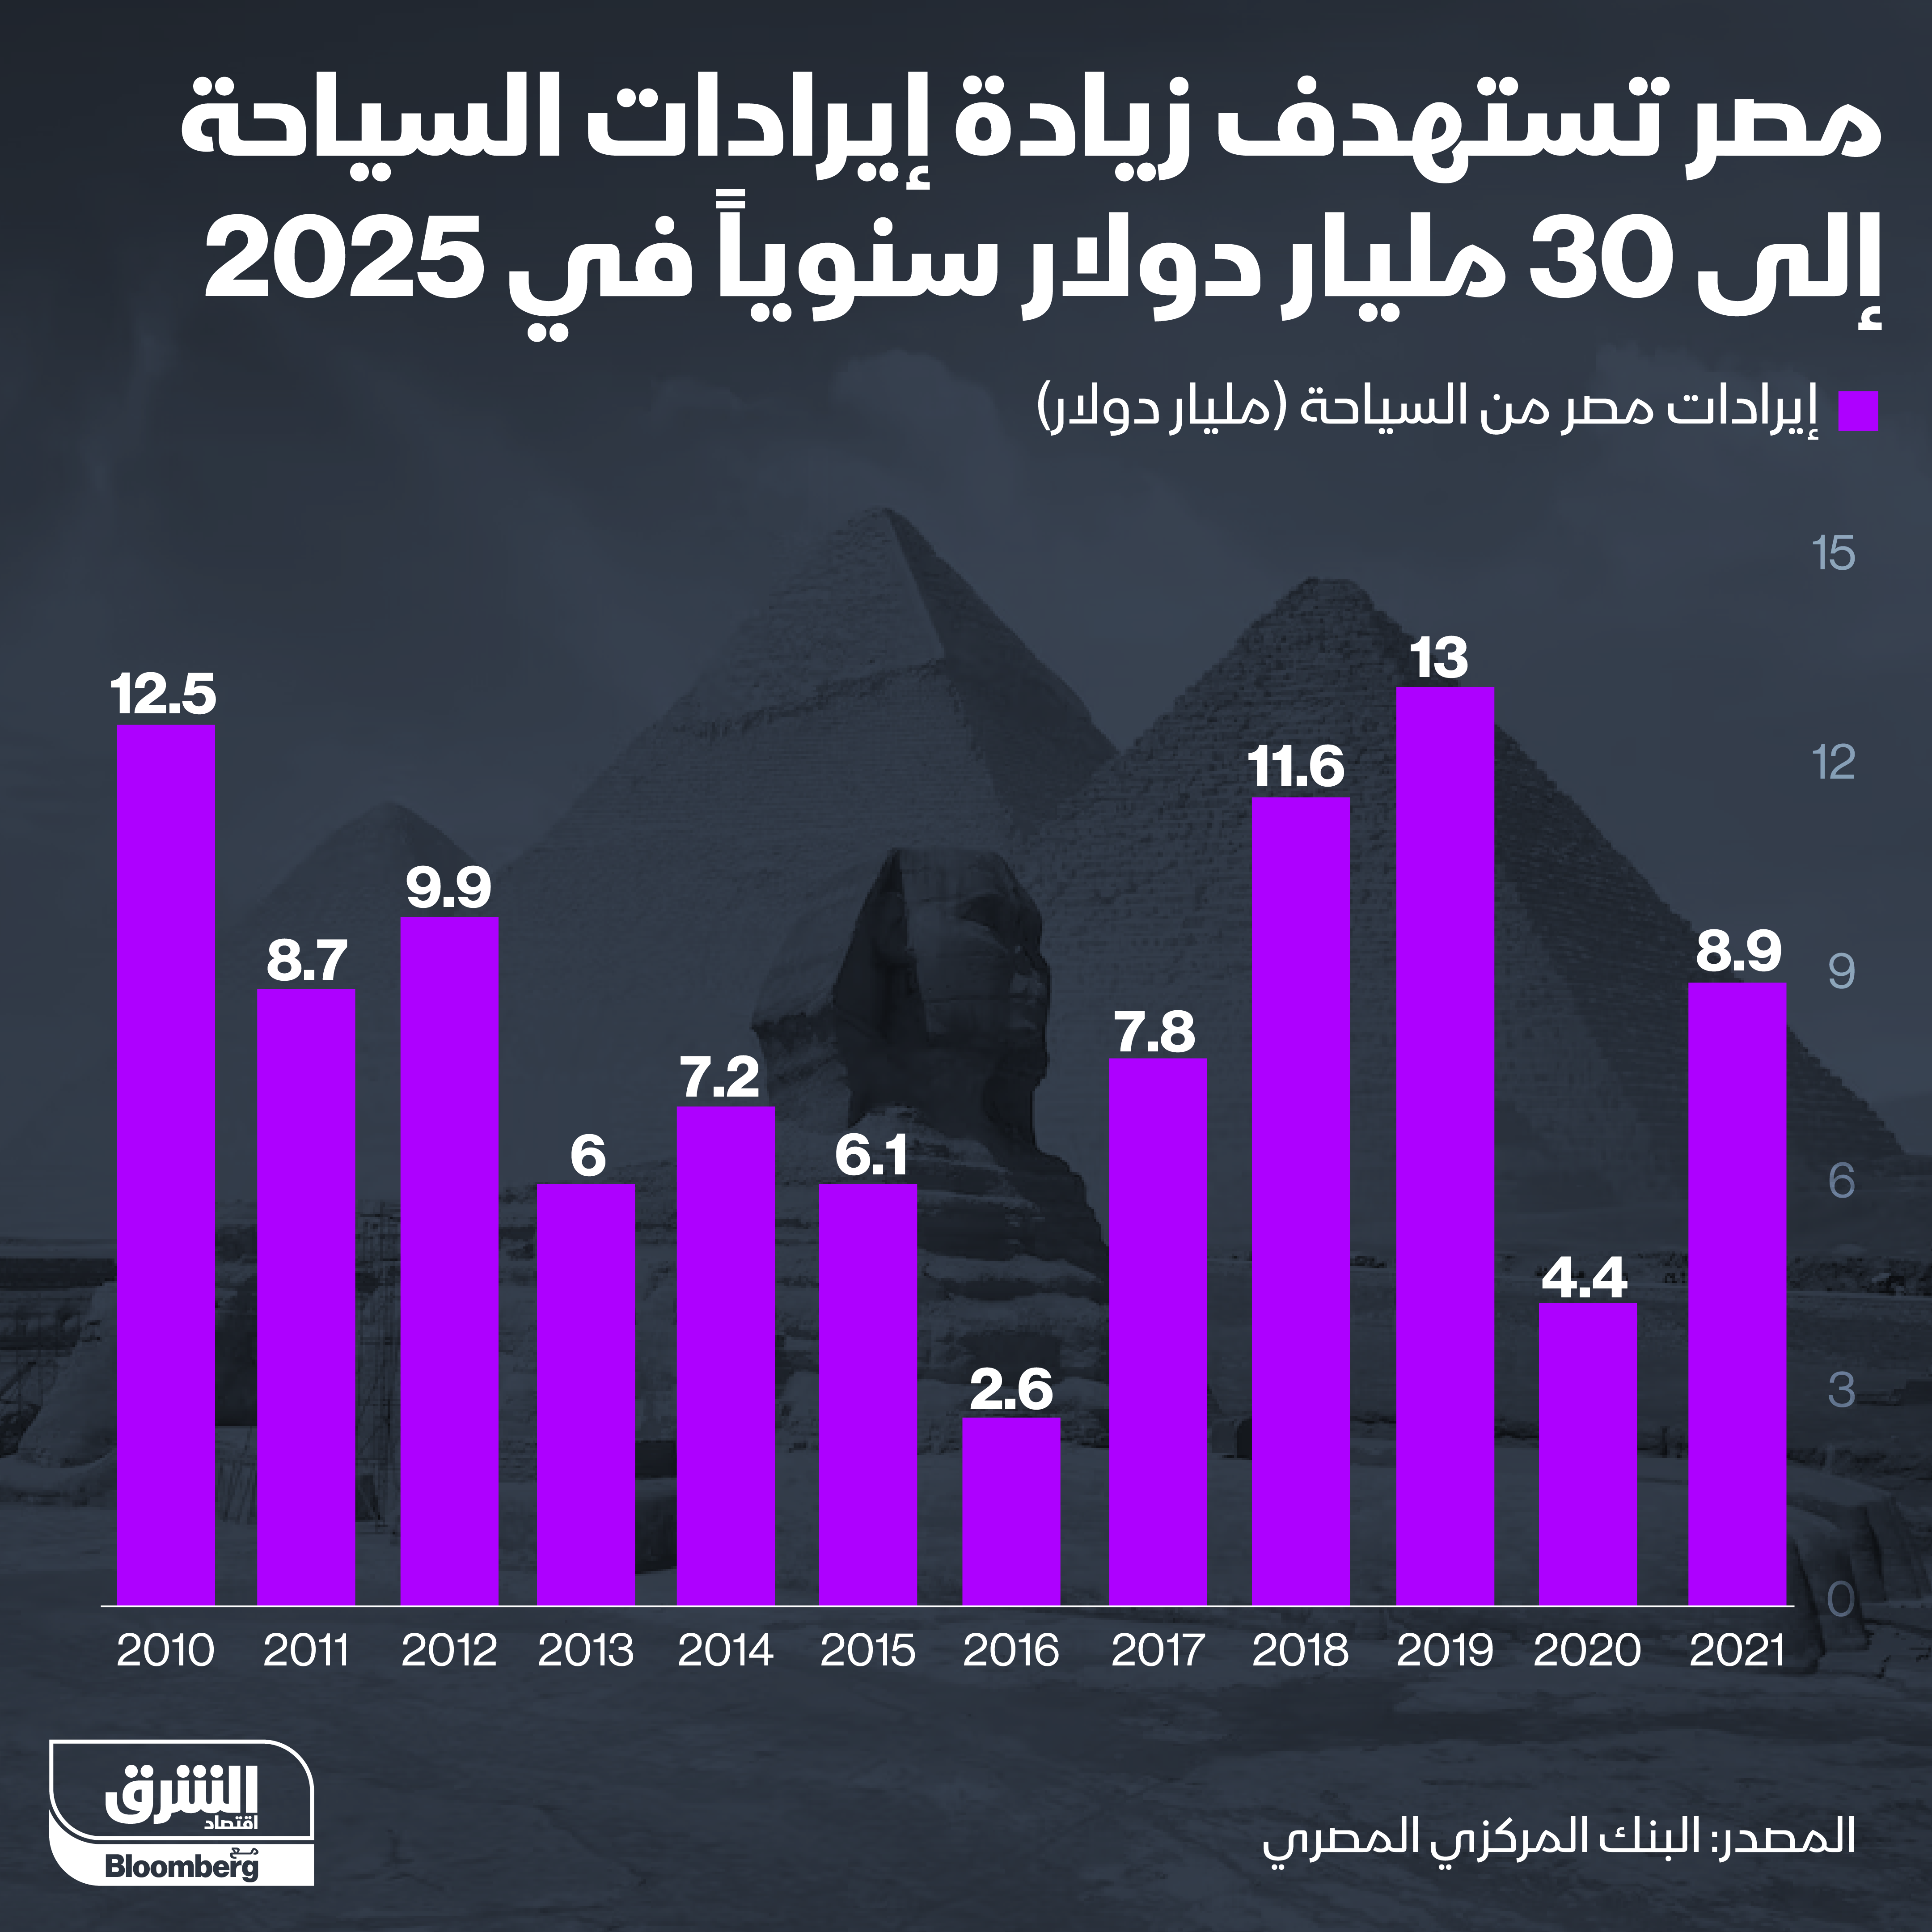 إيرادات قطاع السياحة في مصر من 2010 إلى 2021 حيث الذروة كانت في 2019 مع تحقيق 13 مليار دولار، فيما تتطلع الحكومة لتتضاعف الإيرادات إلى 30 ملياراً في 2025